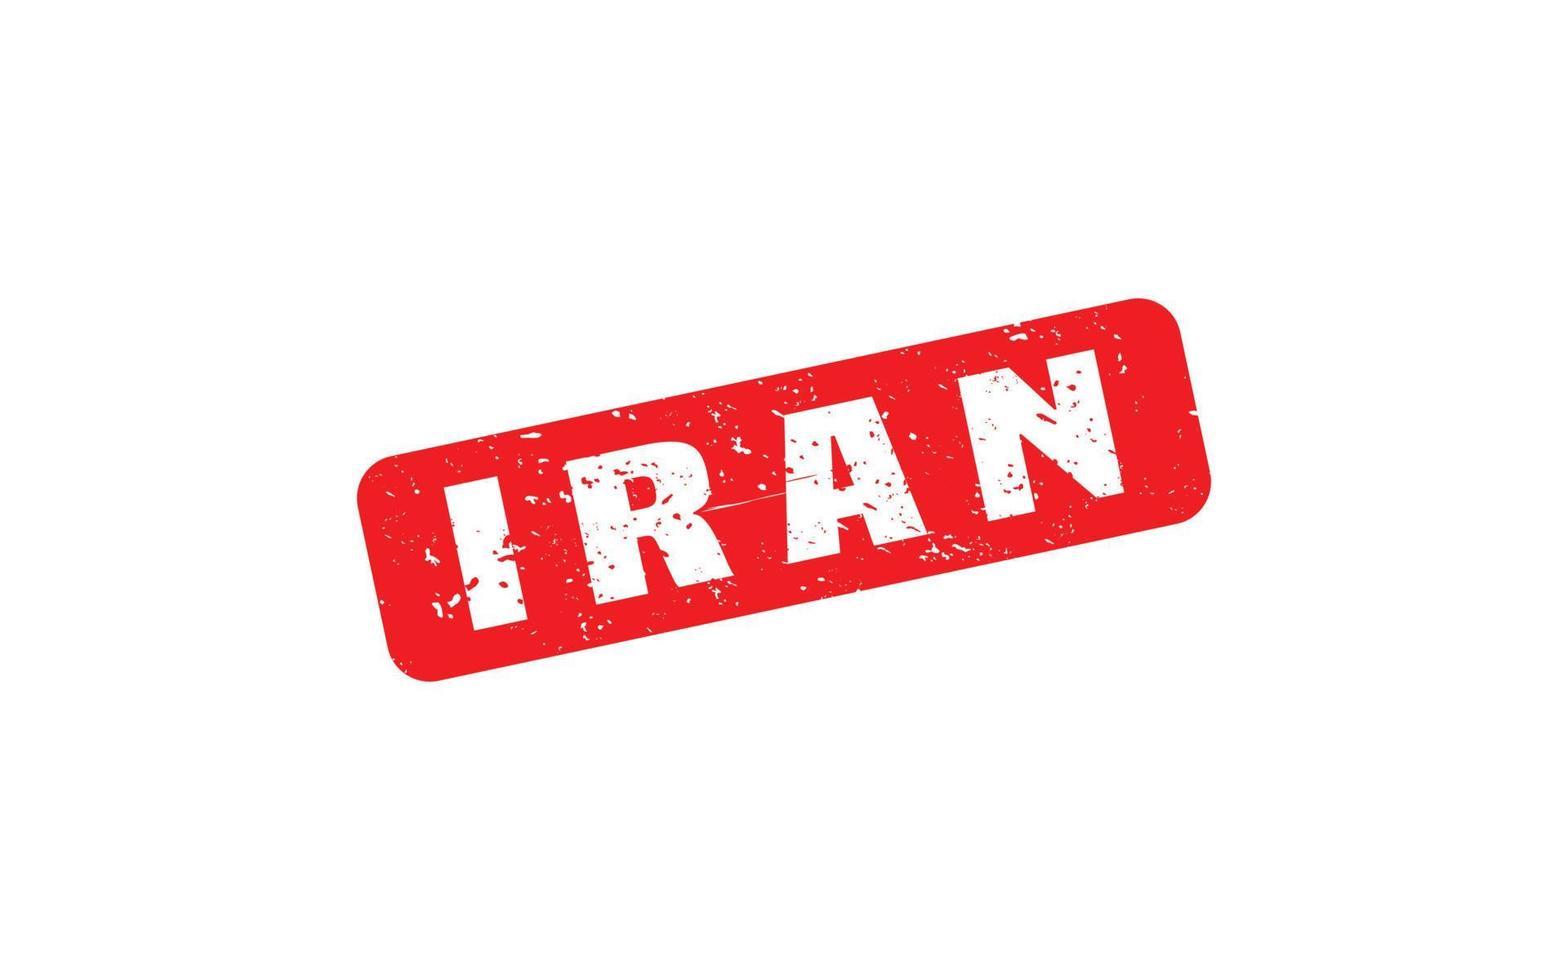 borracha de carimbo do Irã com estilo grunge em fundo branco vetor